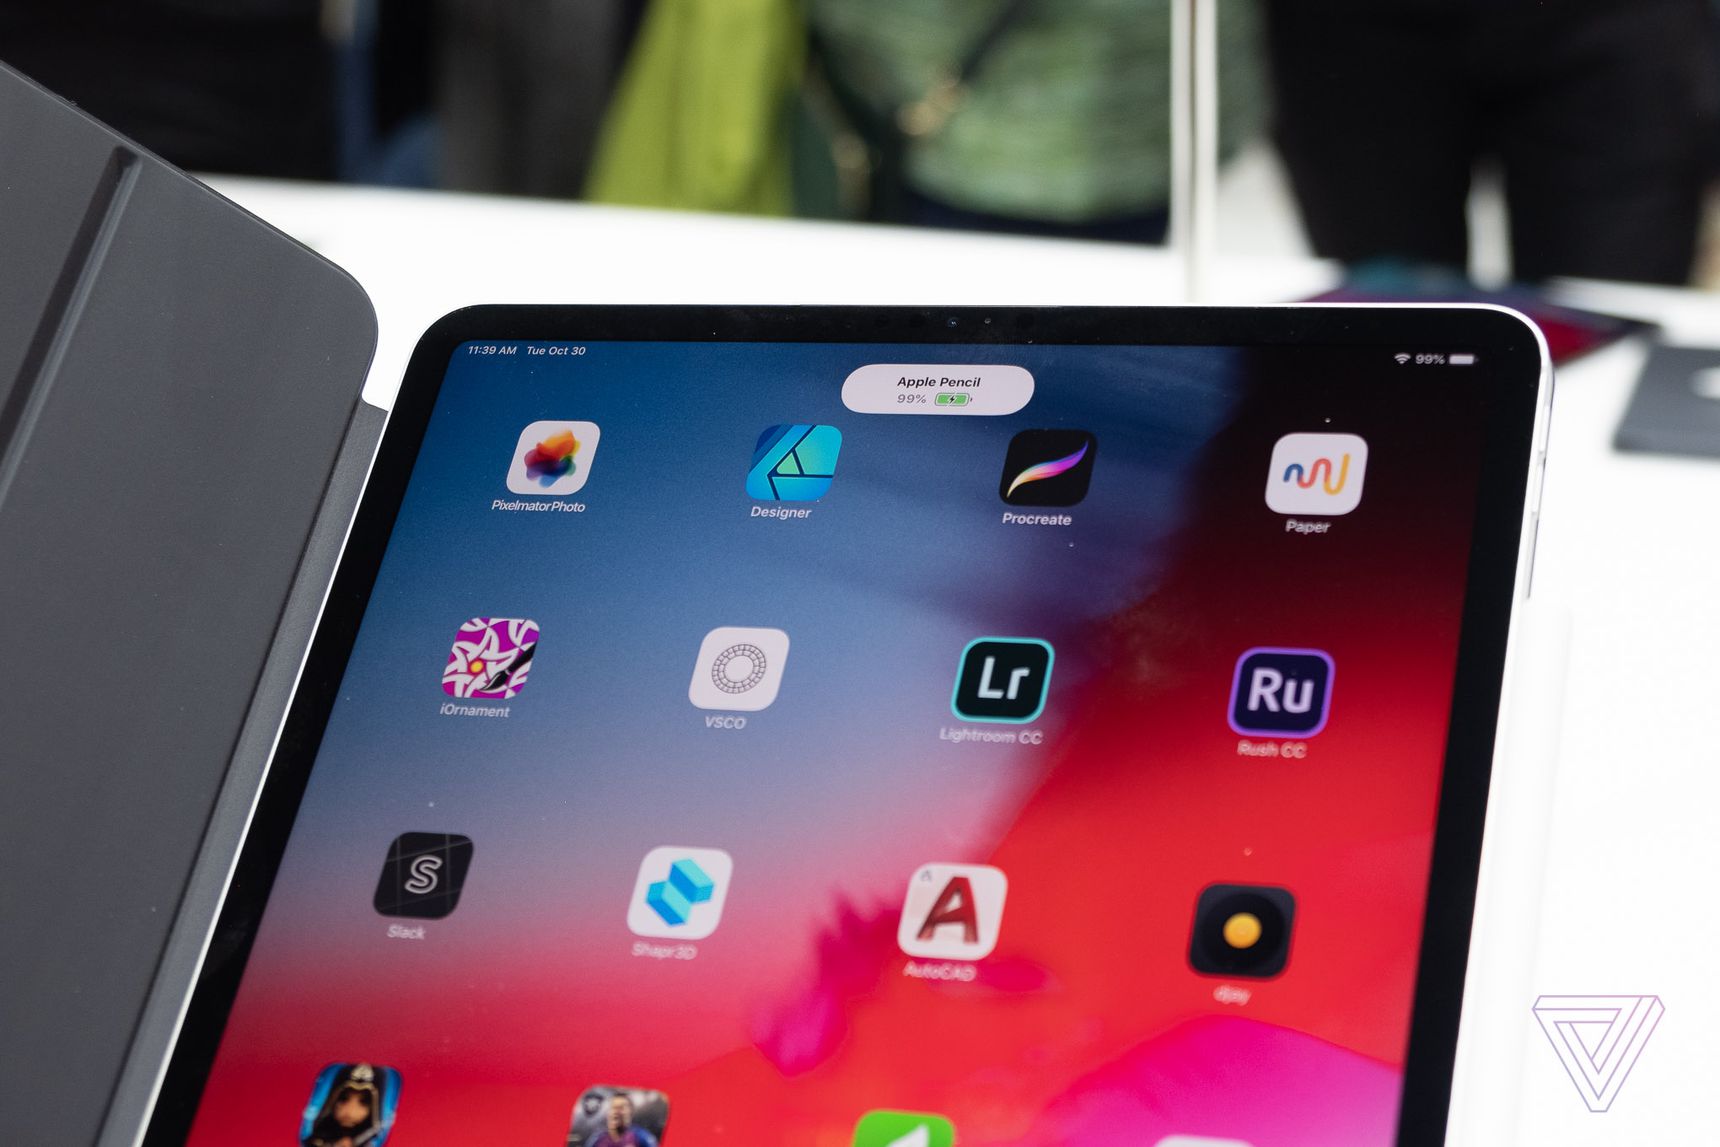 Trên tay iPad Pro 2018: chiếc iPad mạnh đến mức đe doạ thị phần máy tính và bạn chẳng có gì để tiếc khi mua